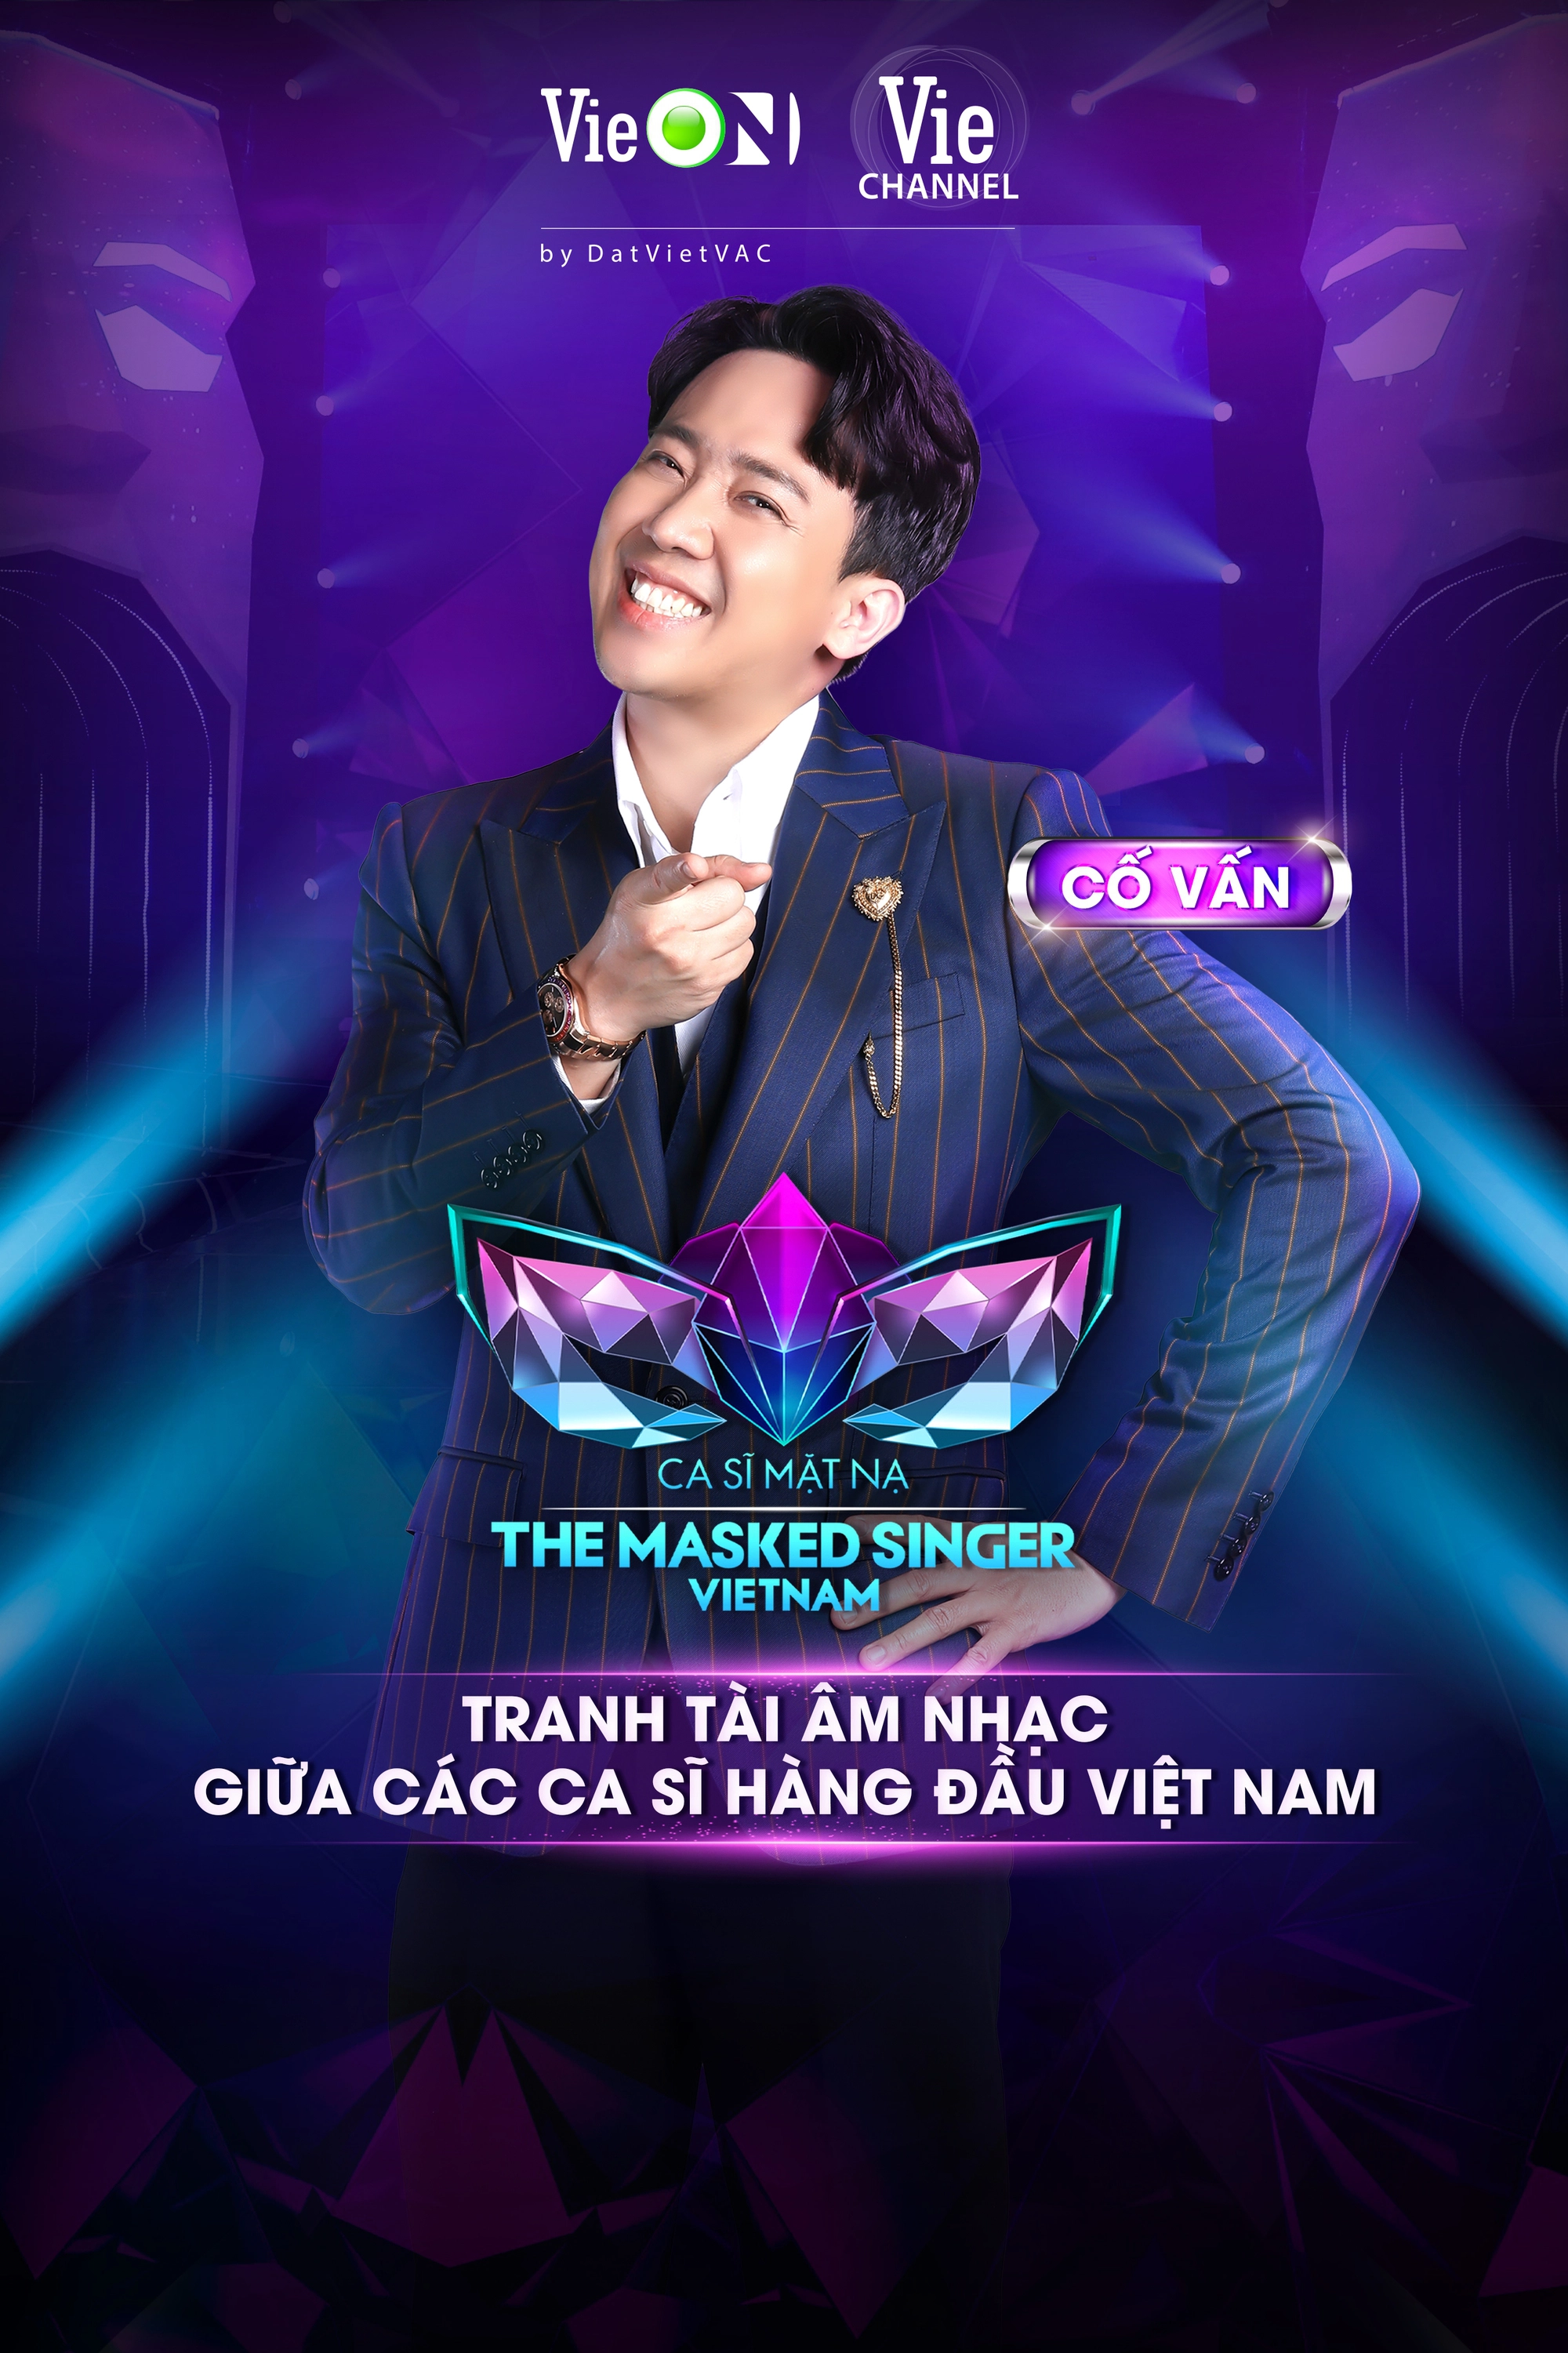 Không phải là MC, Trấn Thành bất ngờ “debut” vai trò cố vấn cho một chương trình tranh tài âm nhạc giữa các ca sĩ hàng đầu Việt Nam  - Ảnh 1.